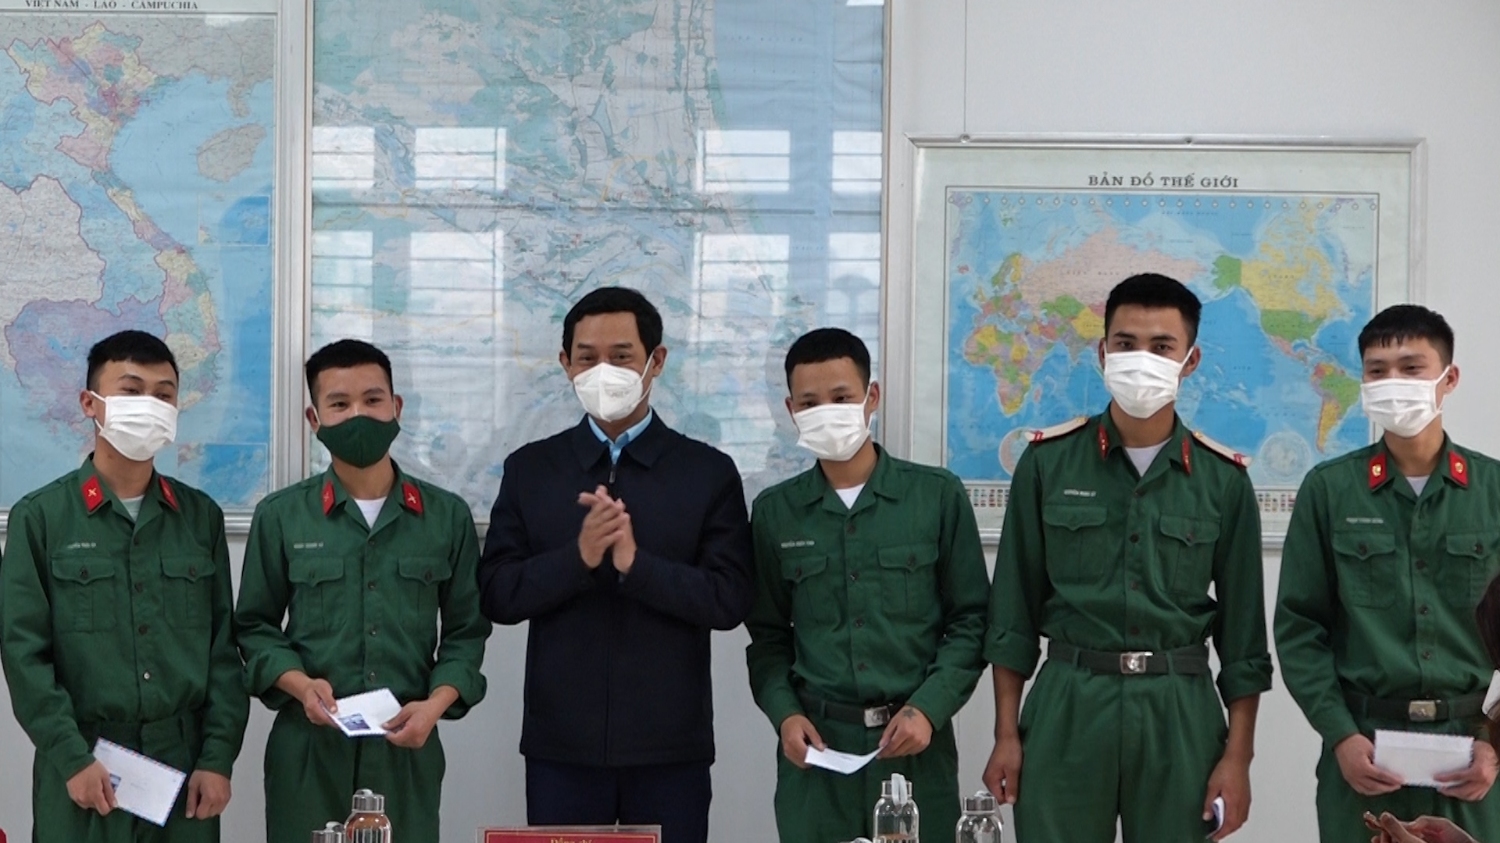 Đồng chí Nguyễn Văn Tình PCT UBND thị xã tặng quà động viên cho các quân nhân xuất ngũ